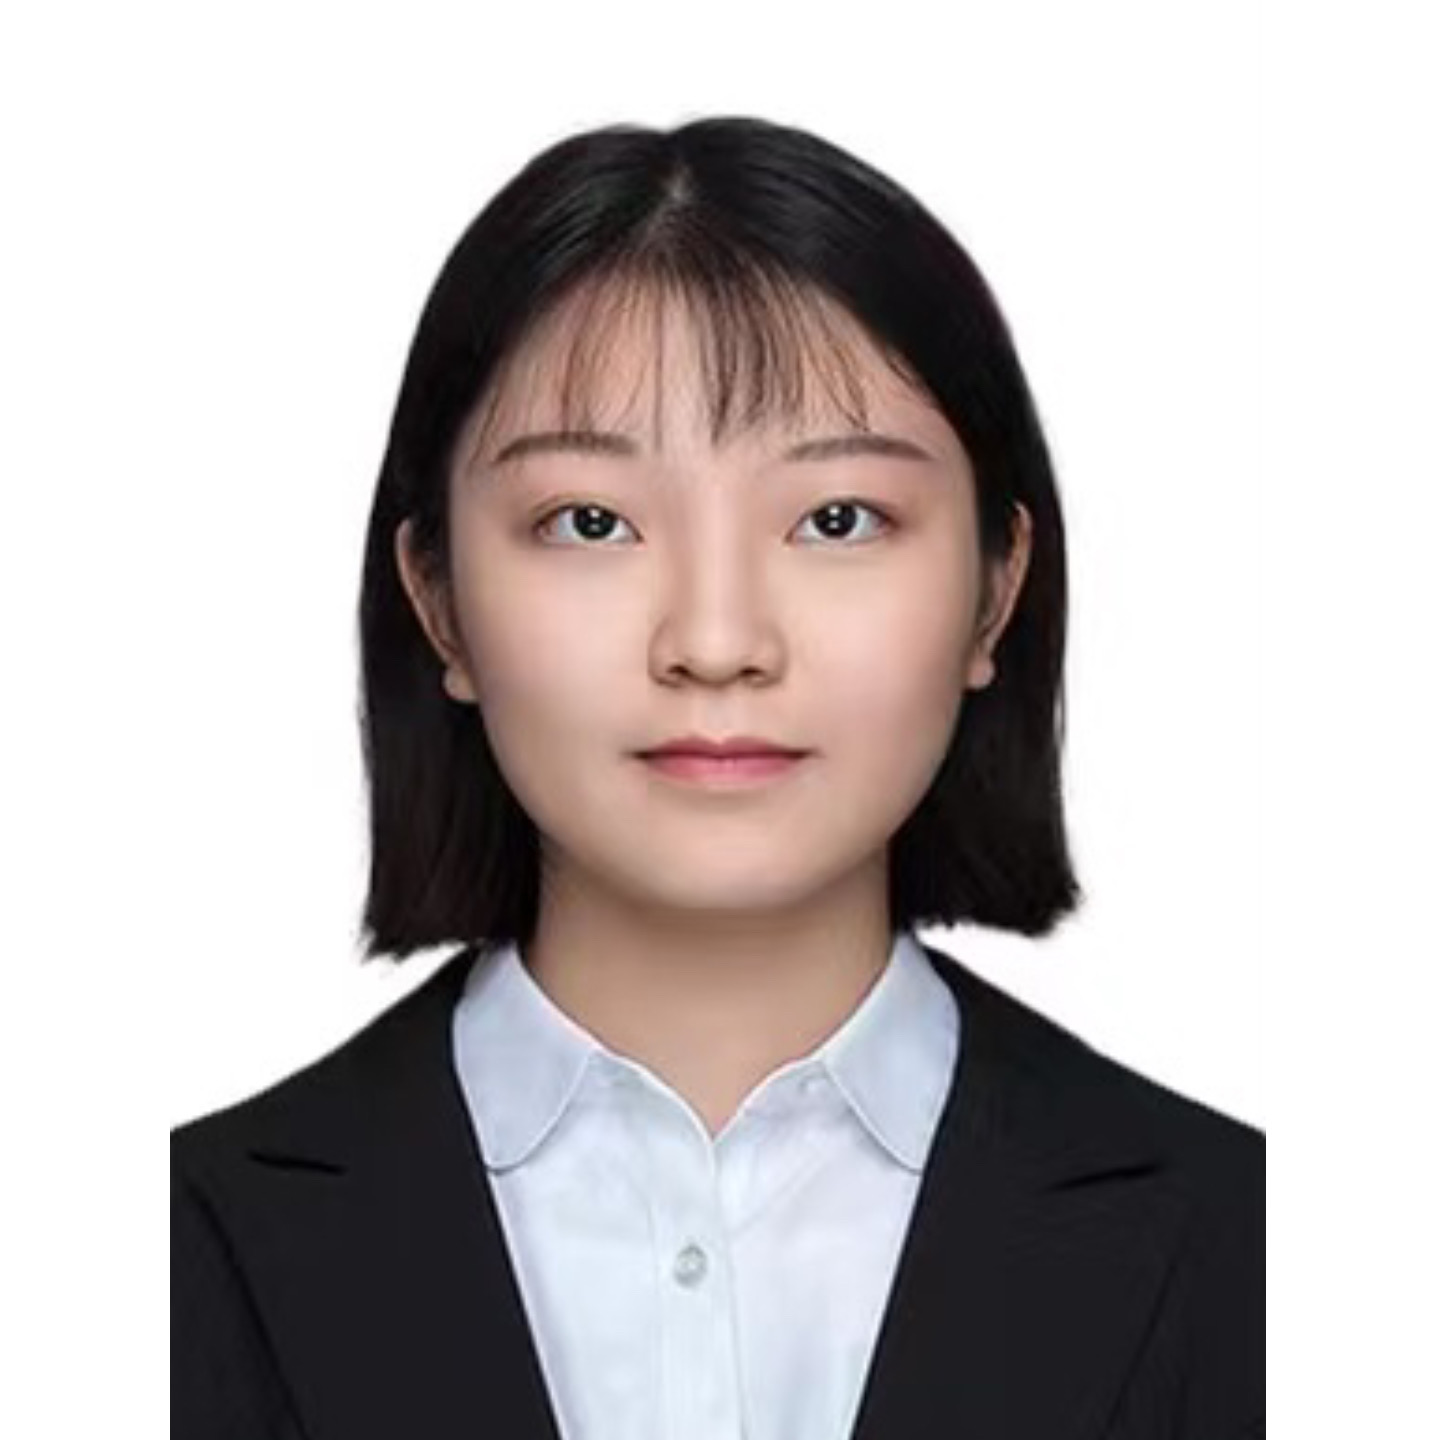 Ms. Yiqi CHEN